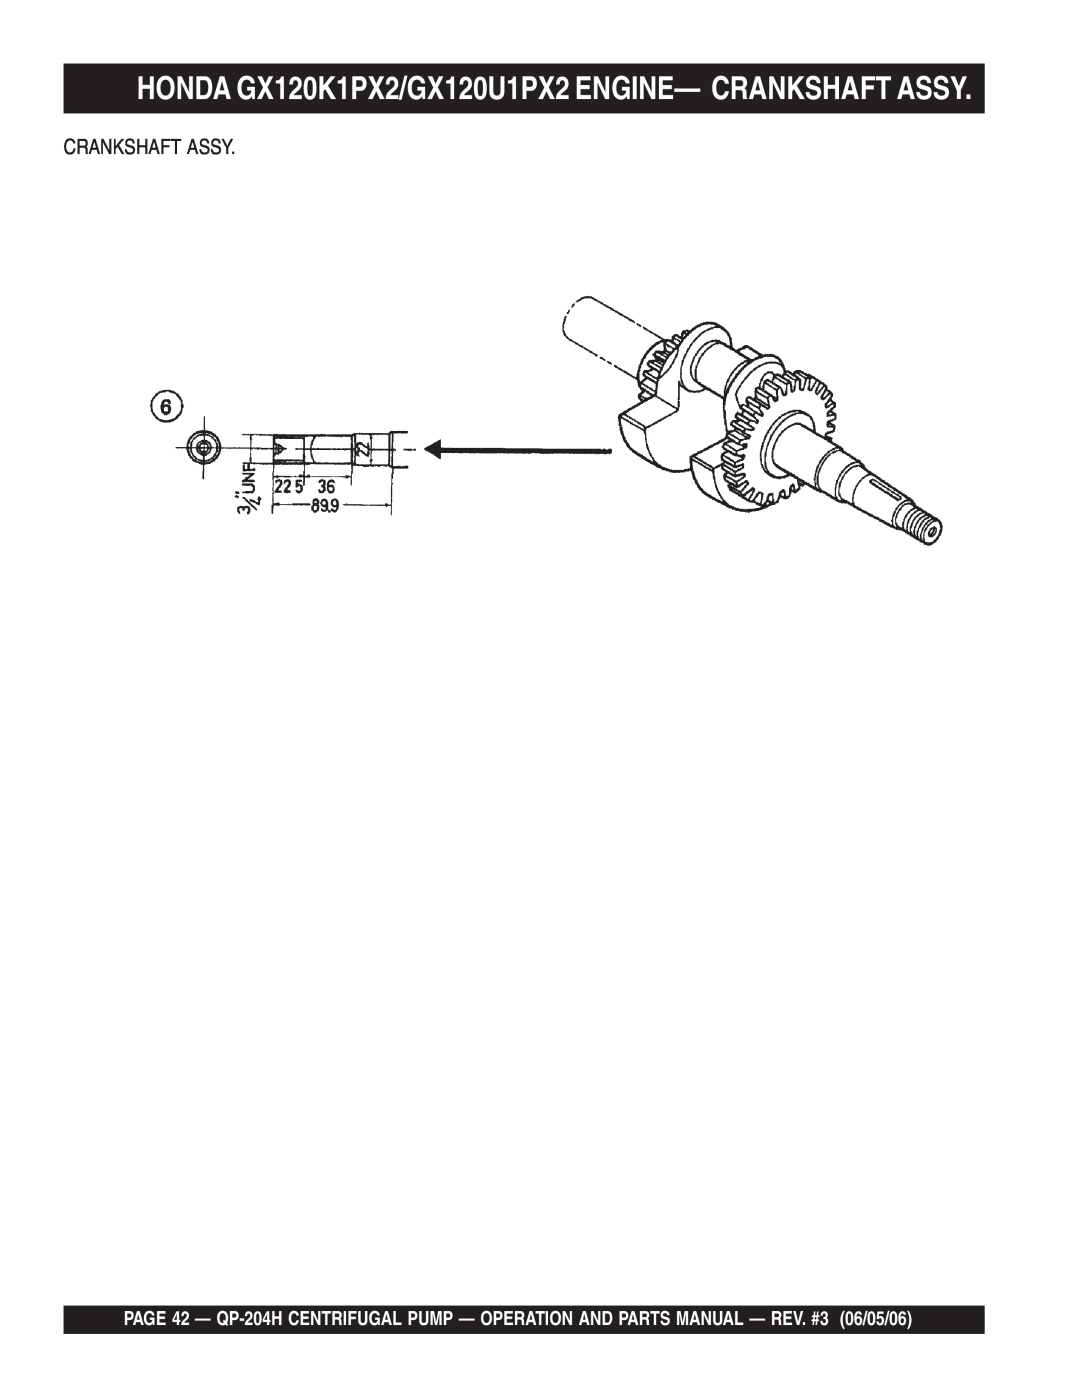 Multiquip QP-204H manual Crankshaft Assy 